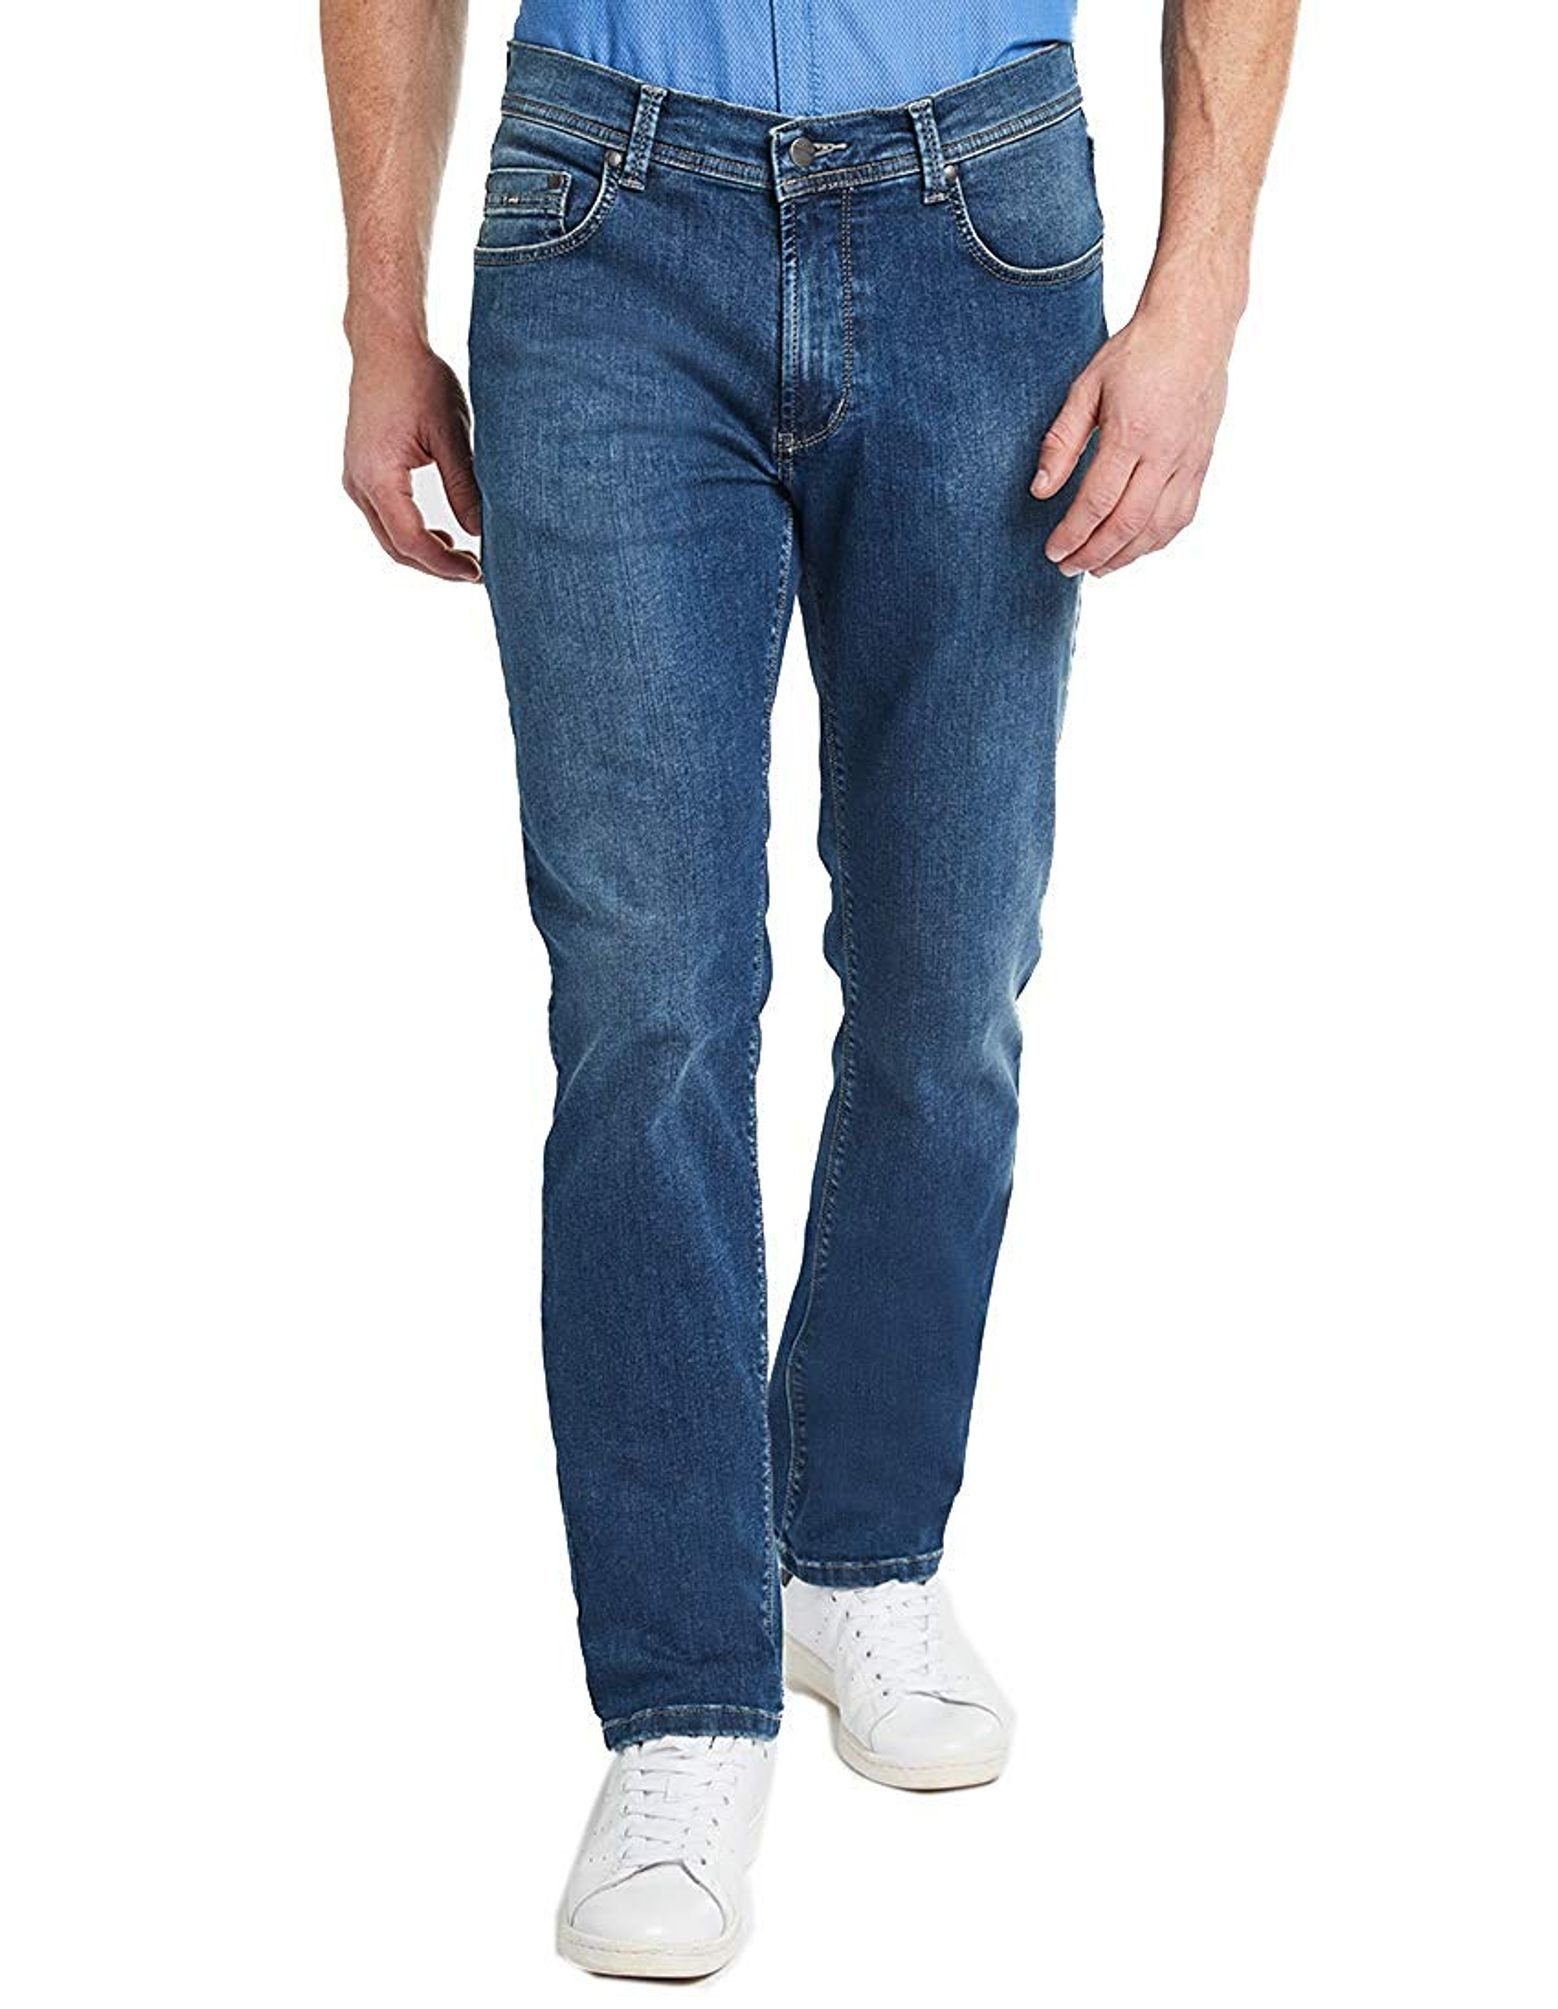 Supergünstiger Rundfunk Pioneer Authentic Jeans 5-Pocket-Jeans 1680 Flexibilität 06 9885 hohe